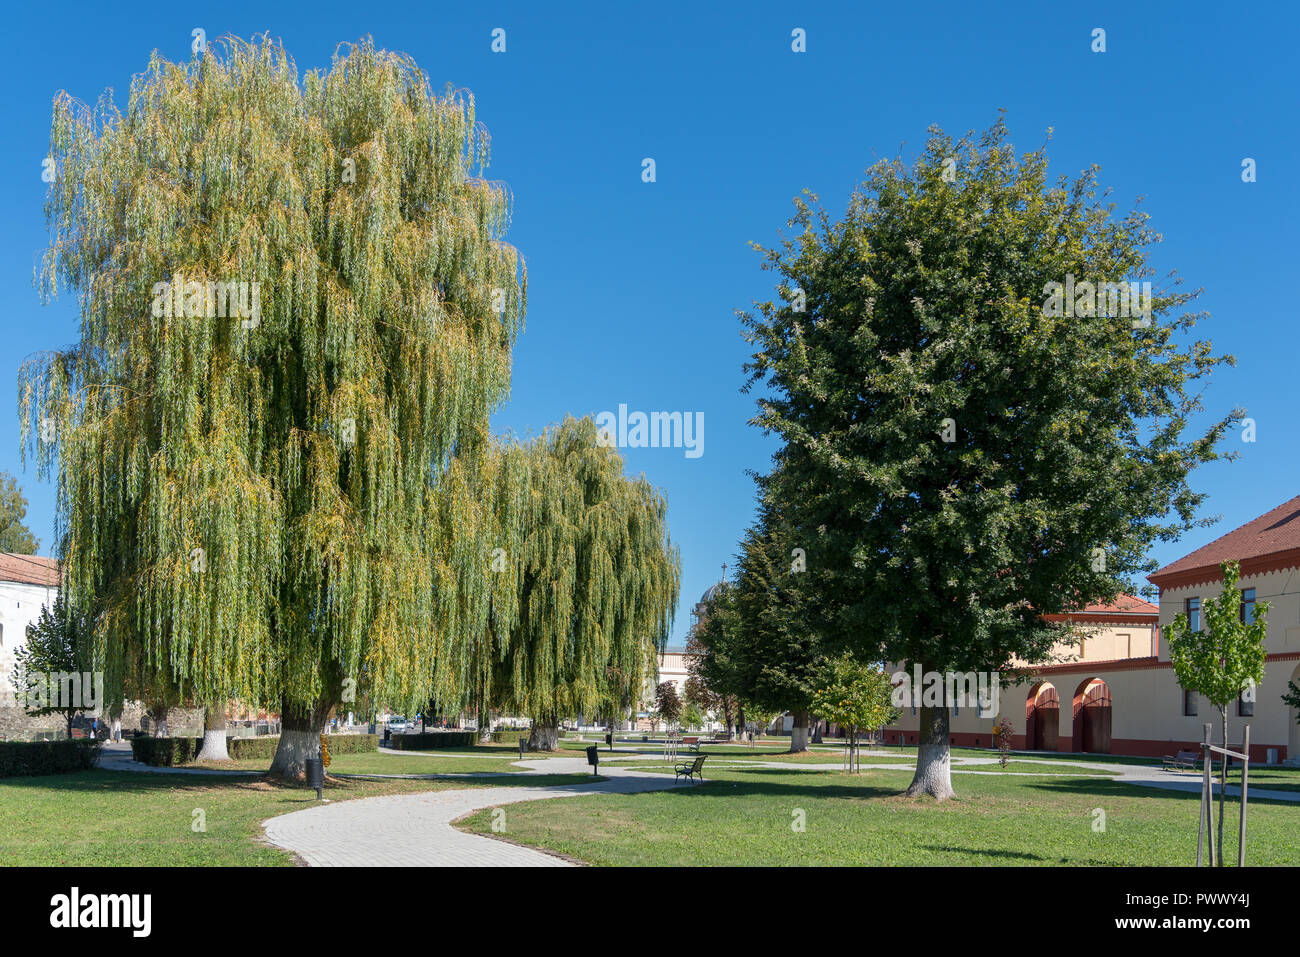 PREJMER, Transilvania/ROMANIA - 20 settembre : visualizzazione dello spazio verde in Prejmer Transilvania Romania il 20 settembre 2018. Una persona non identificata Foto Stock